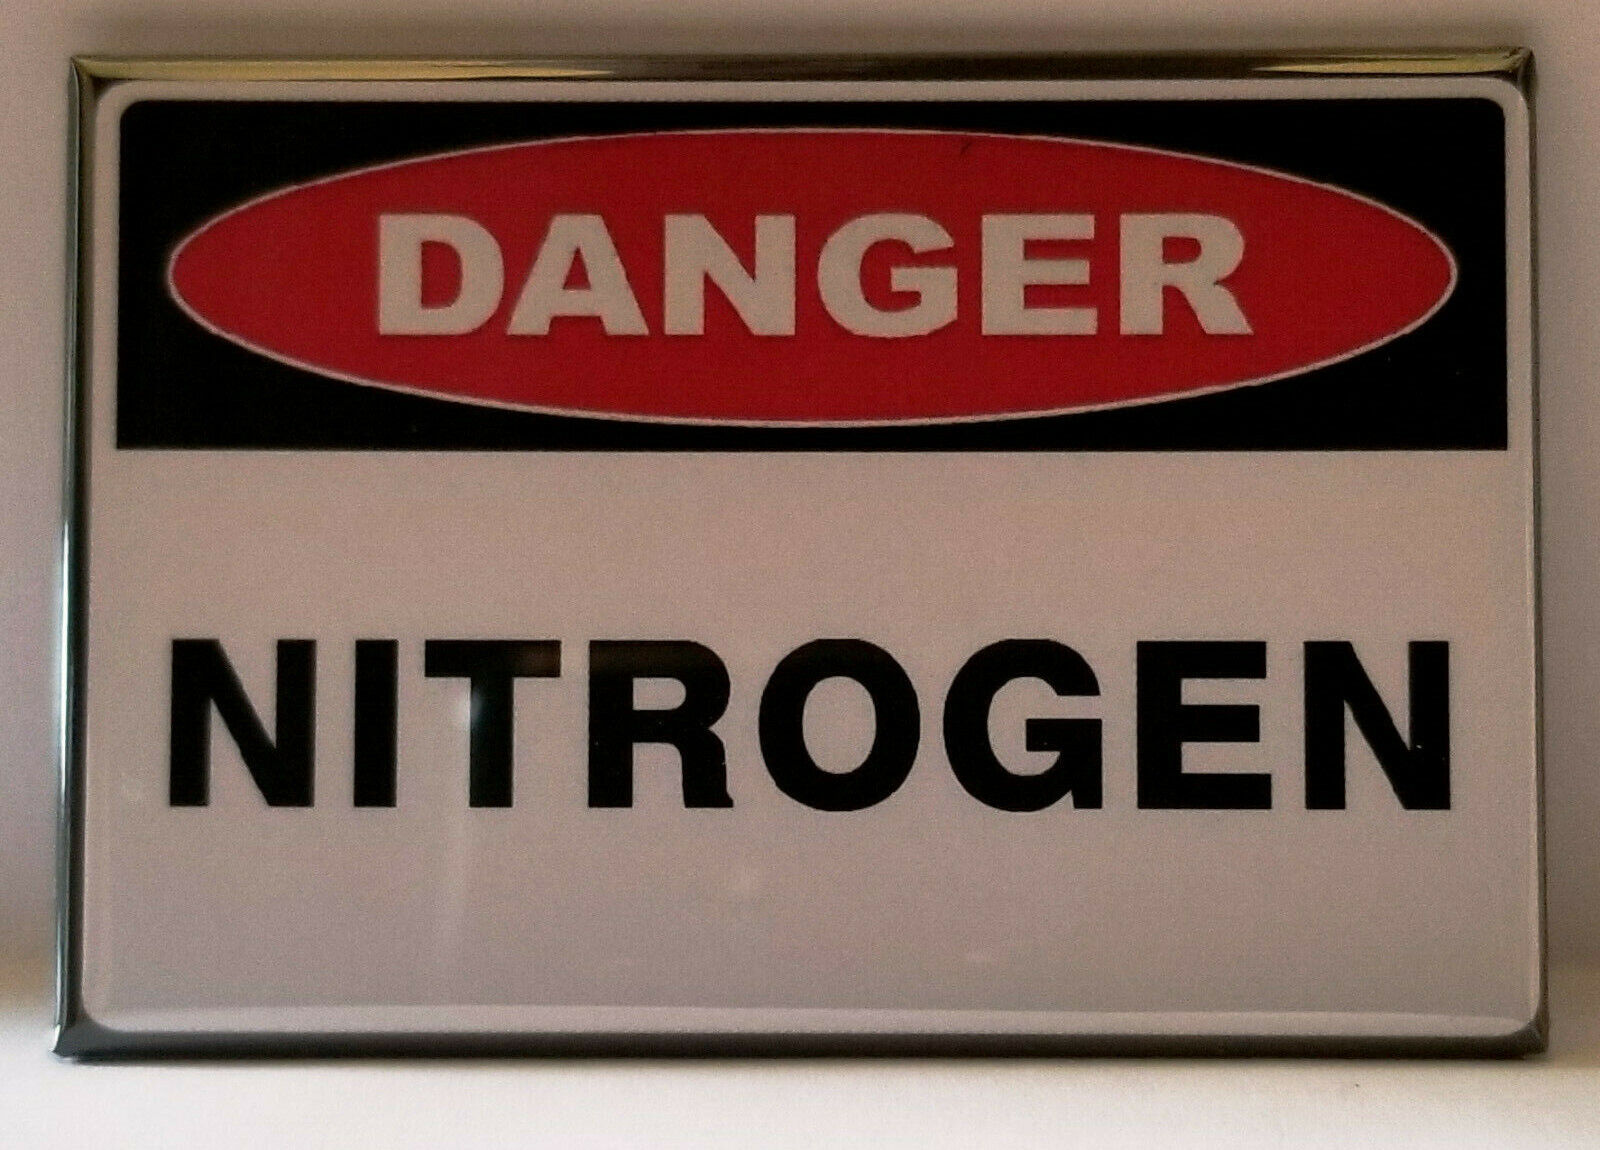 Danger Nitrogen MAGNET 2